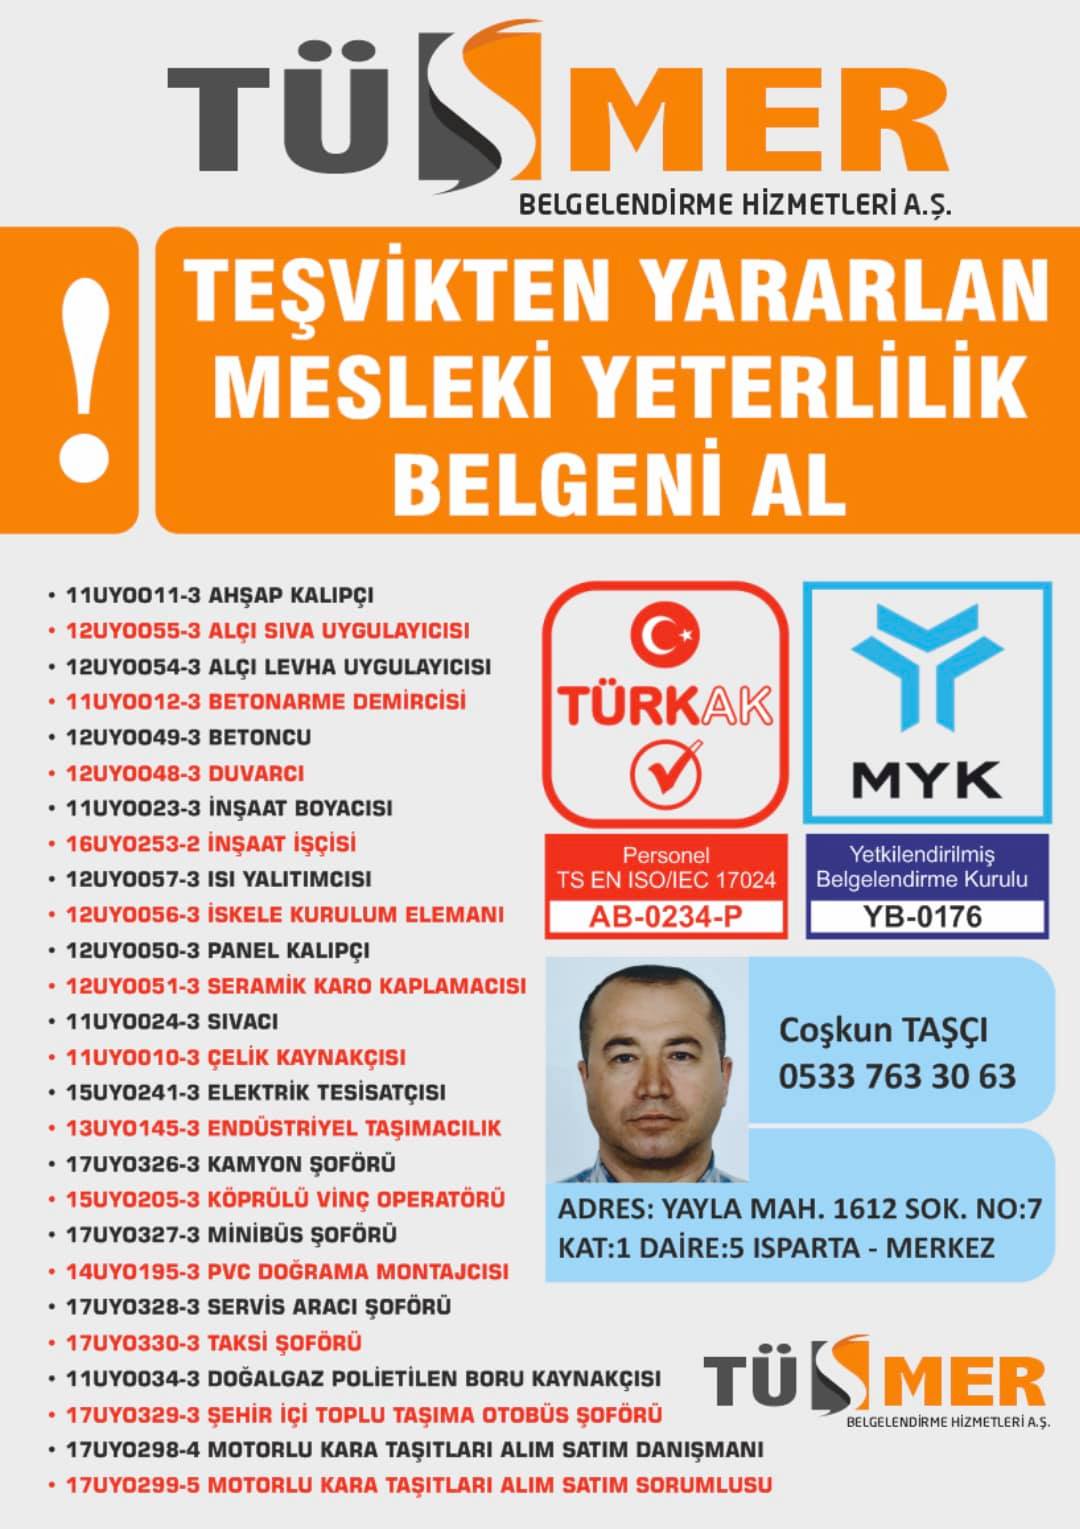 MYK MESLEKİ YETERLİLİK BELGESİ Serik Antalya